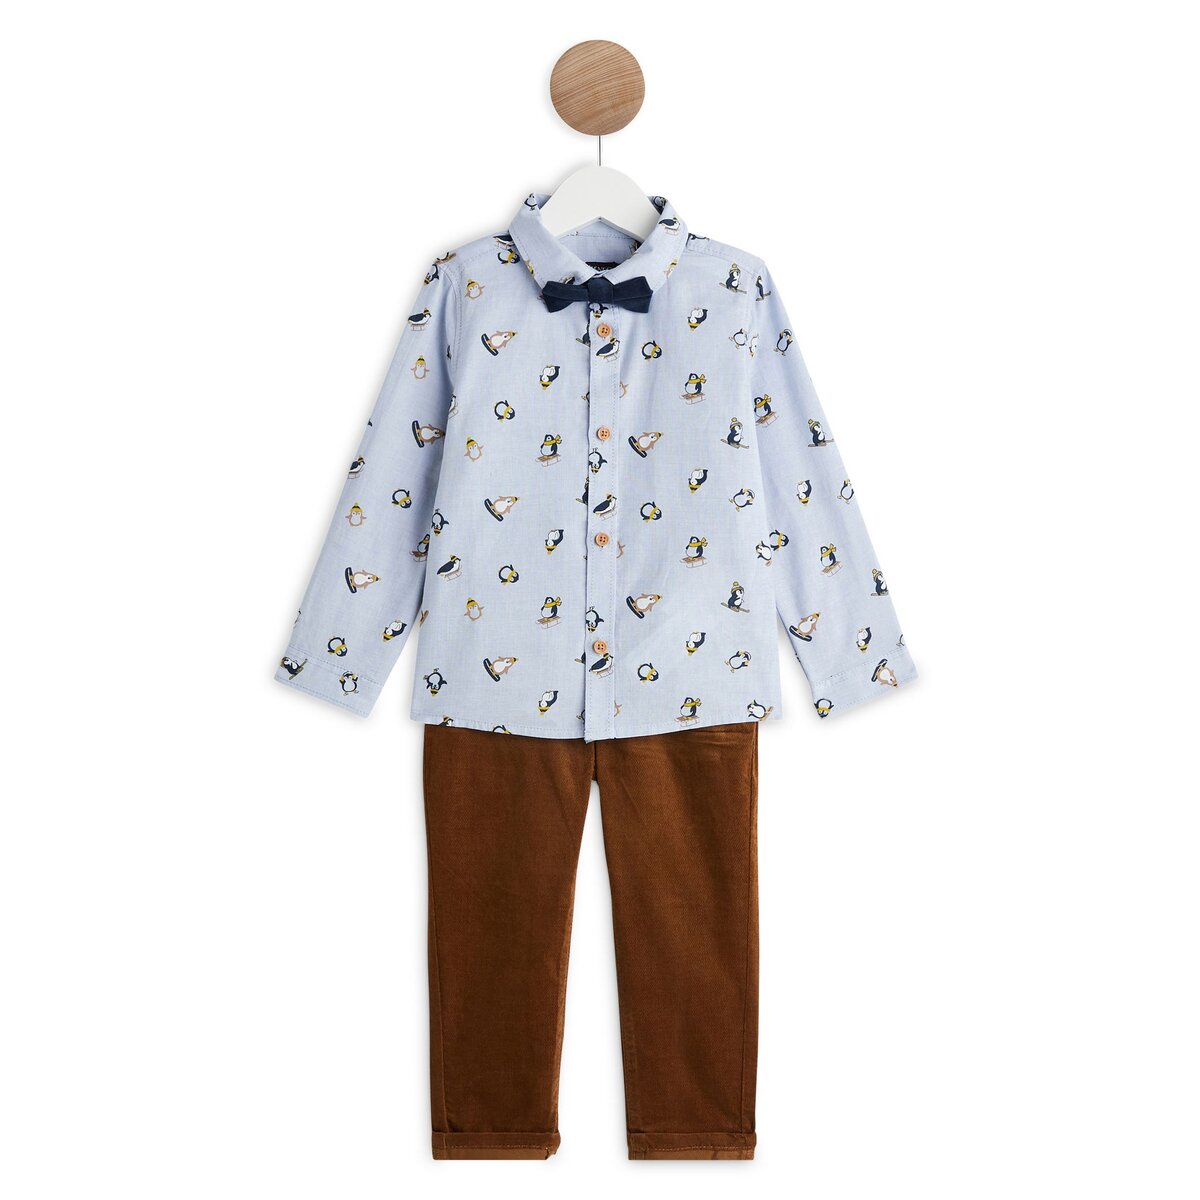 INEXTENSO Ensemble de fêtes pantalon + chemise avec noeud papillon bébé garçon